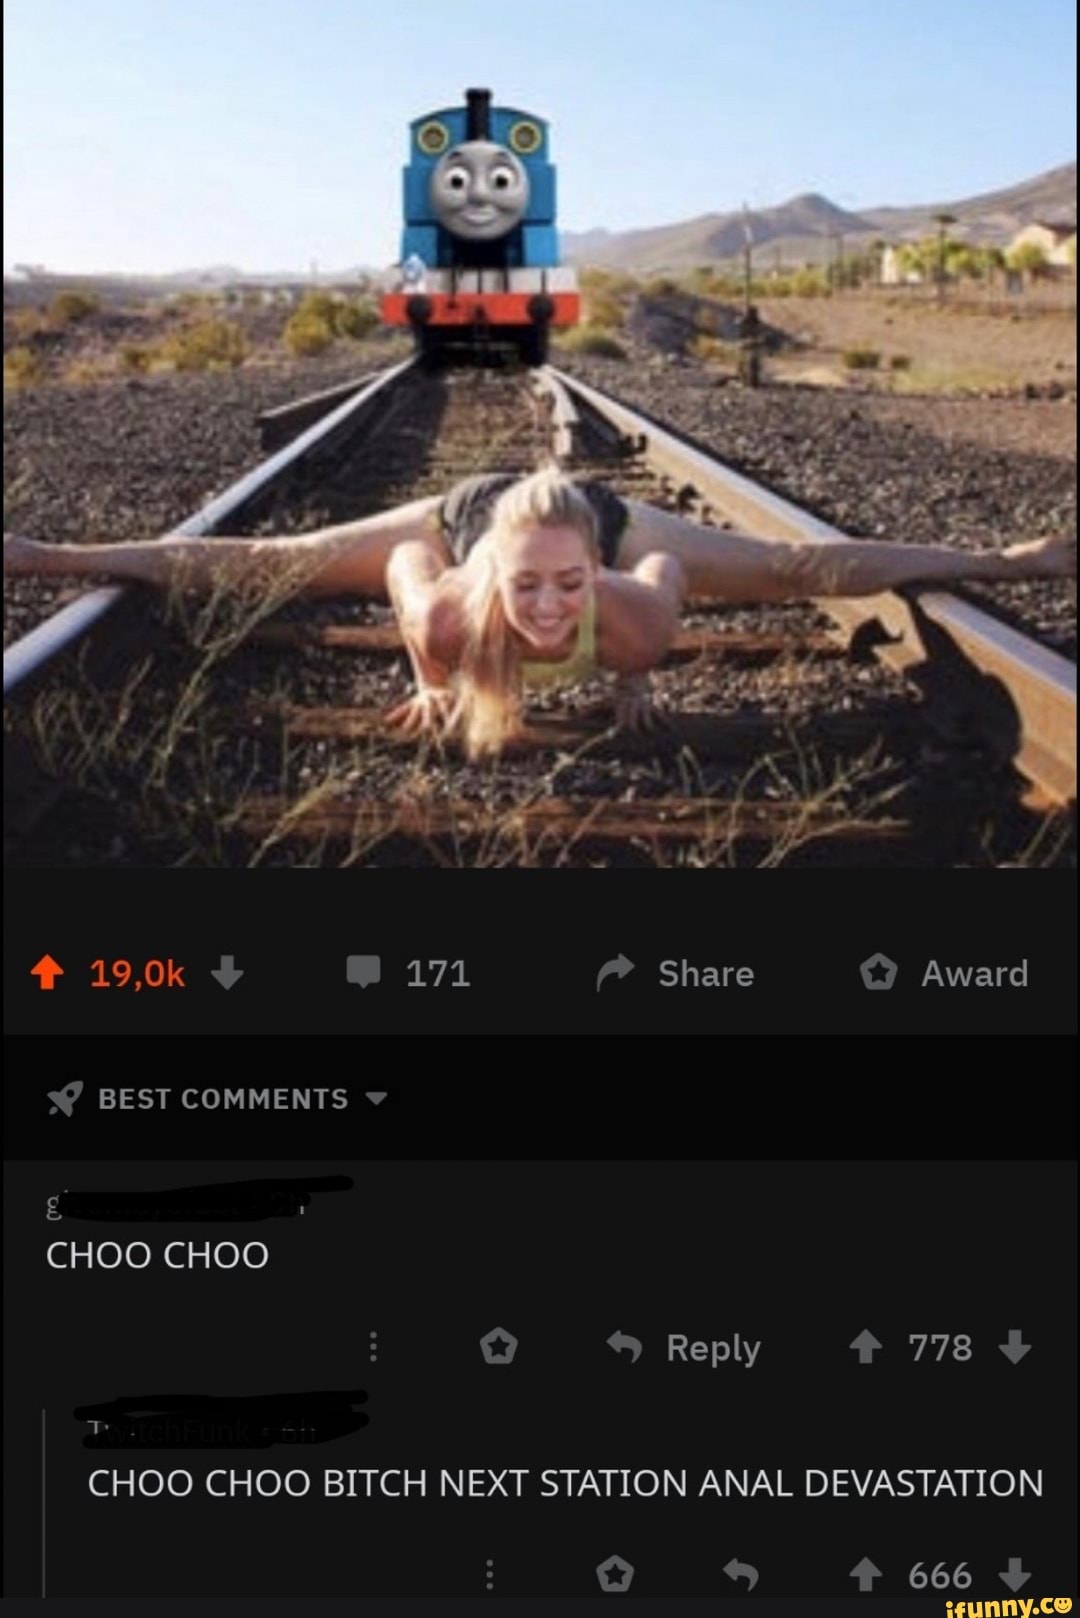 Choo choo train sushi